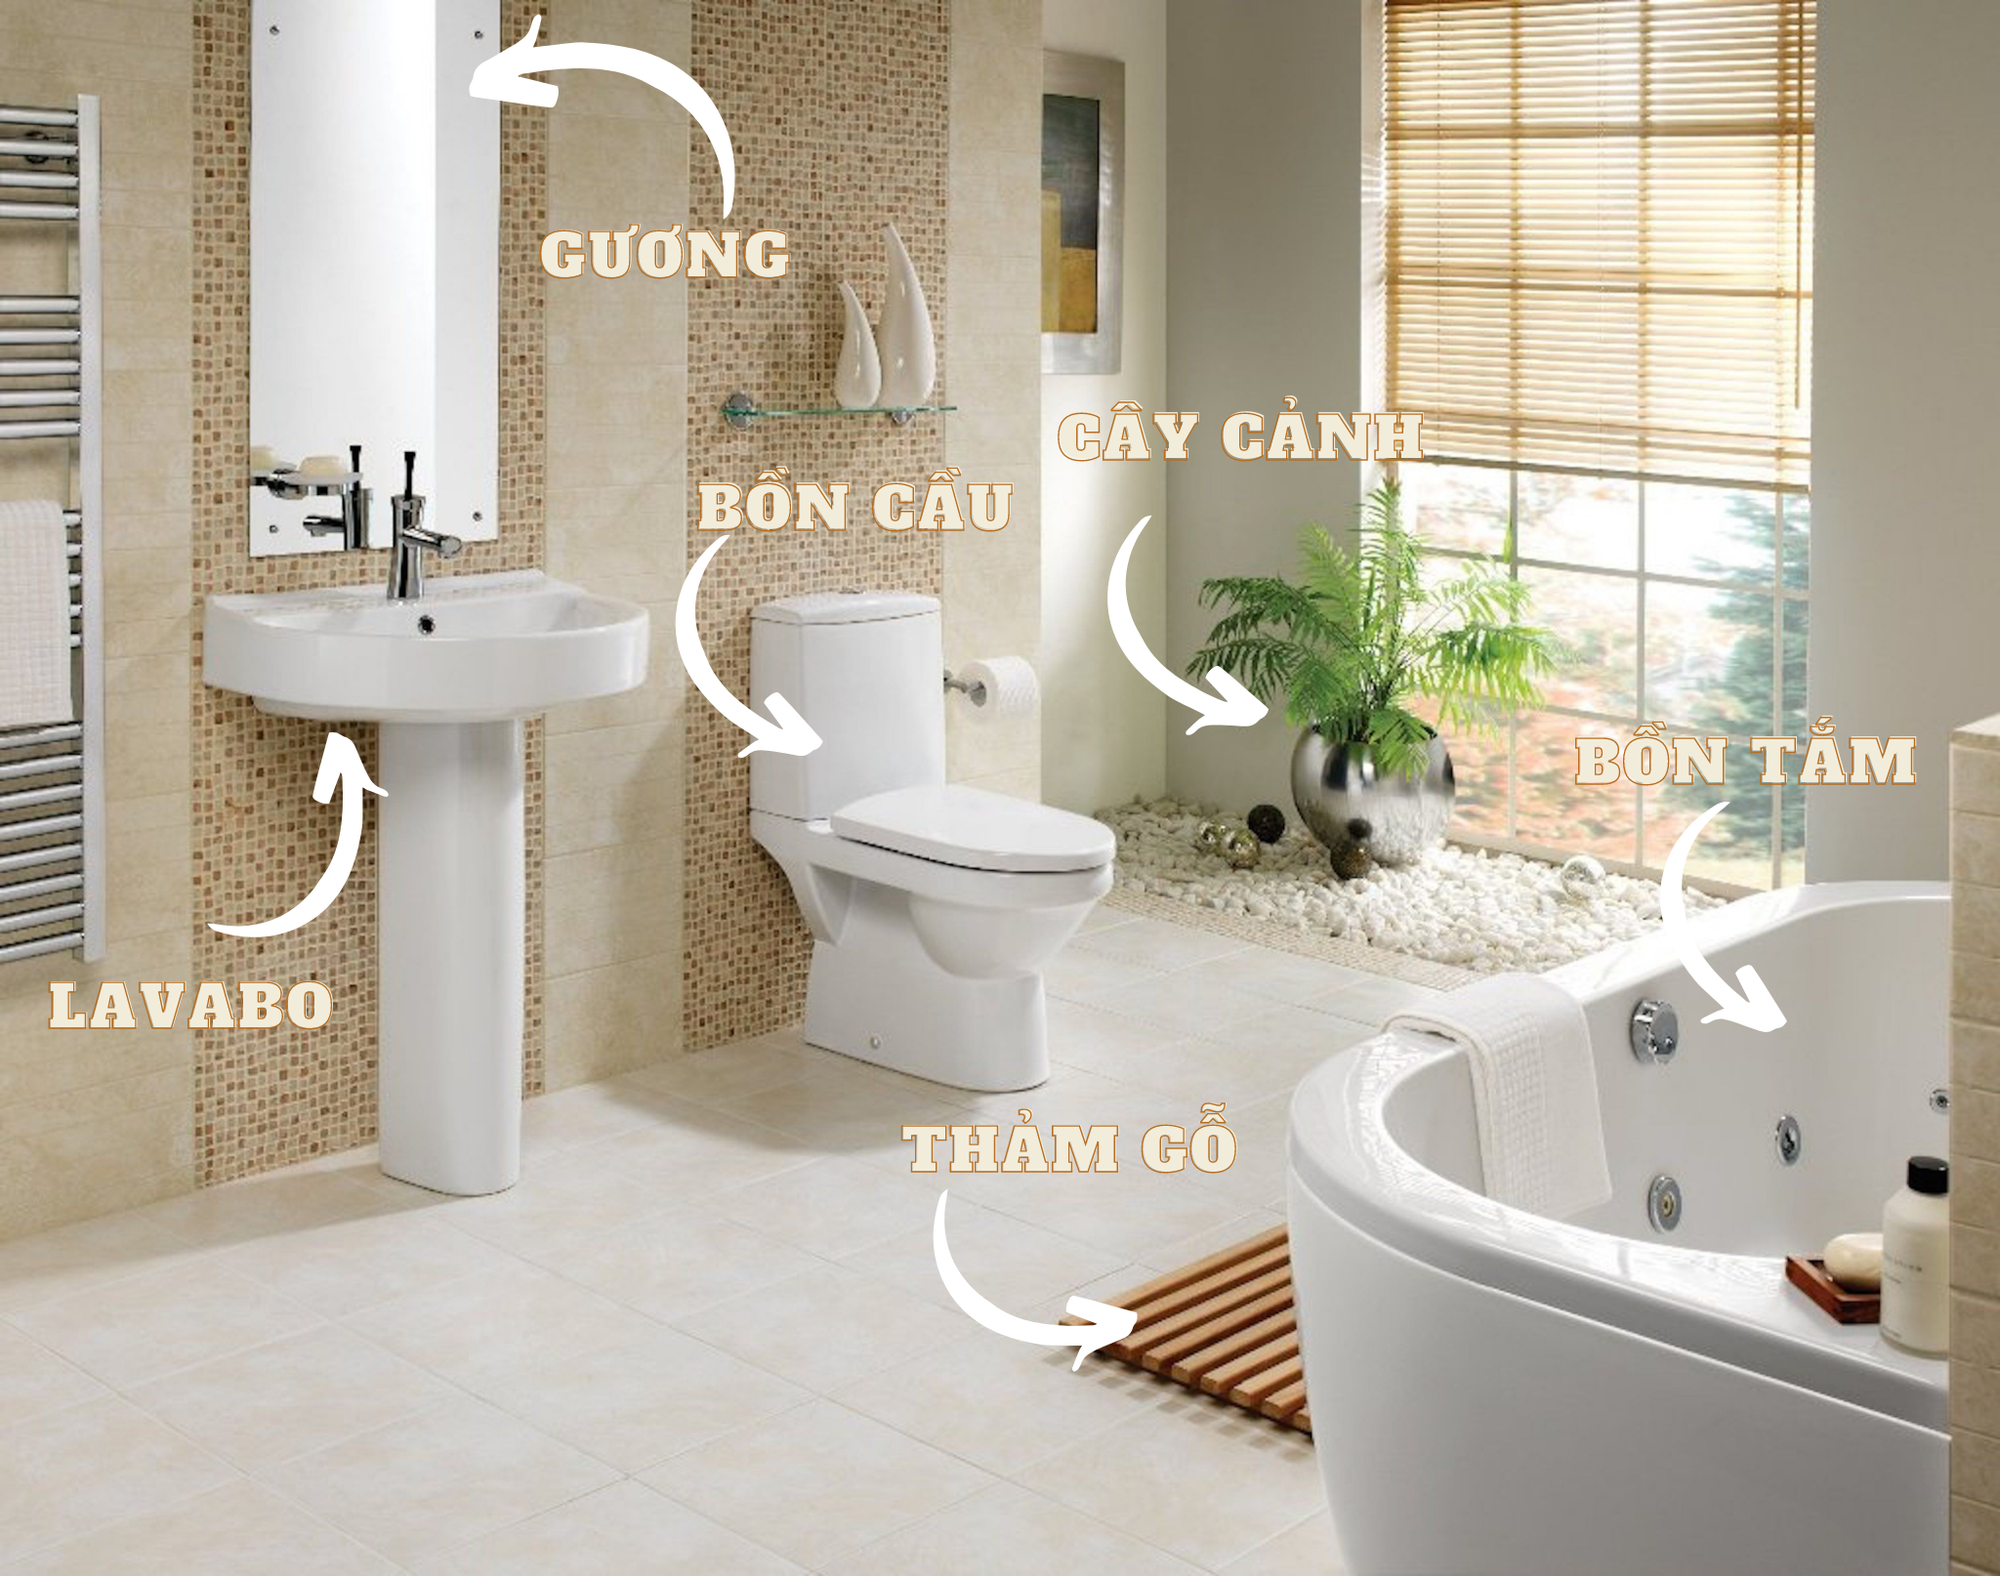 6 món đồ mách bạn mua về thiết kế cho phòng tắm theo phong cách hiện đại, dễ dàng chỉ trong phút mốt  - Ảnh 3.